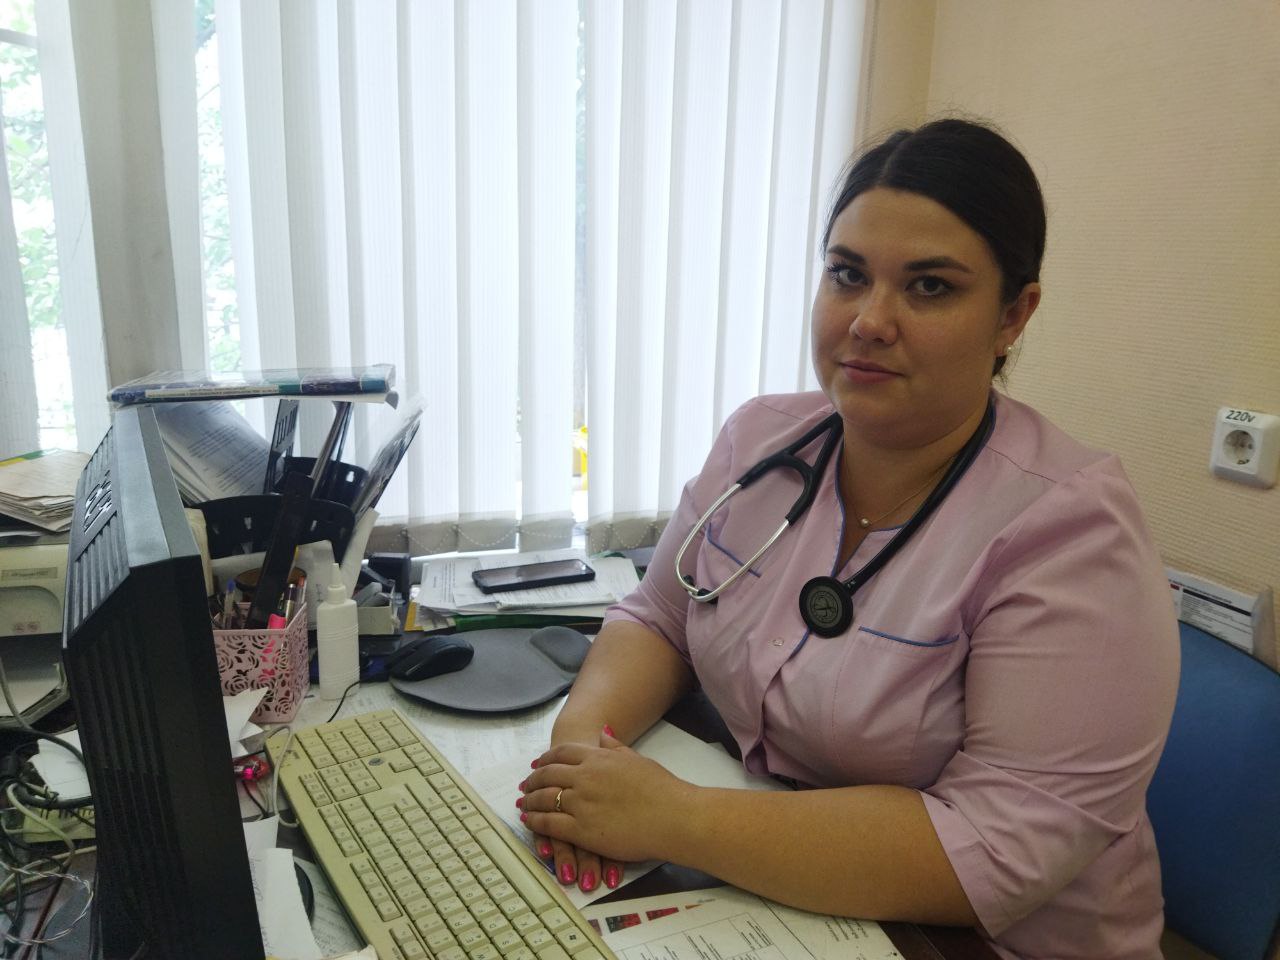 Поддержать в тяжелый момент - главная задача врача паллиативной помощи первой поликлиники ЦГБ №20, Софьи Балуковой.